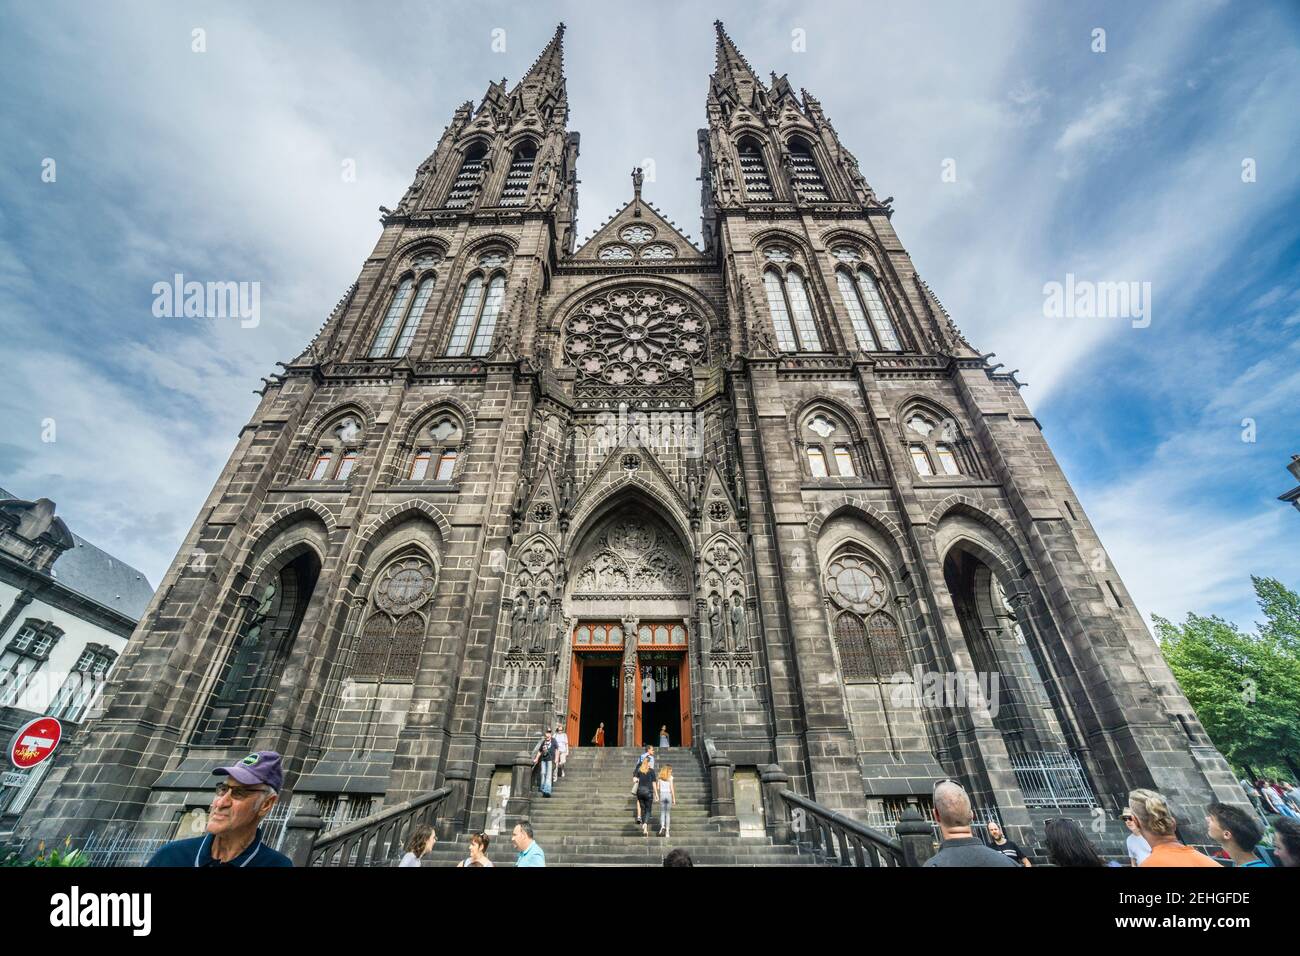 Façade romane et deux flèches de la cathédrale de Clermont-Ferrand, département du Puy-de-Dôme, région Auvergne-Rhône-Alpes, France Banque D'Images